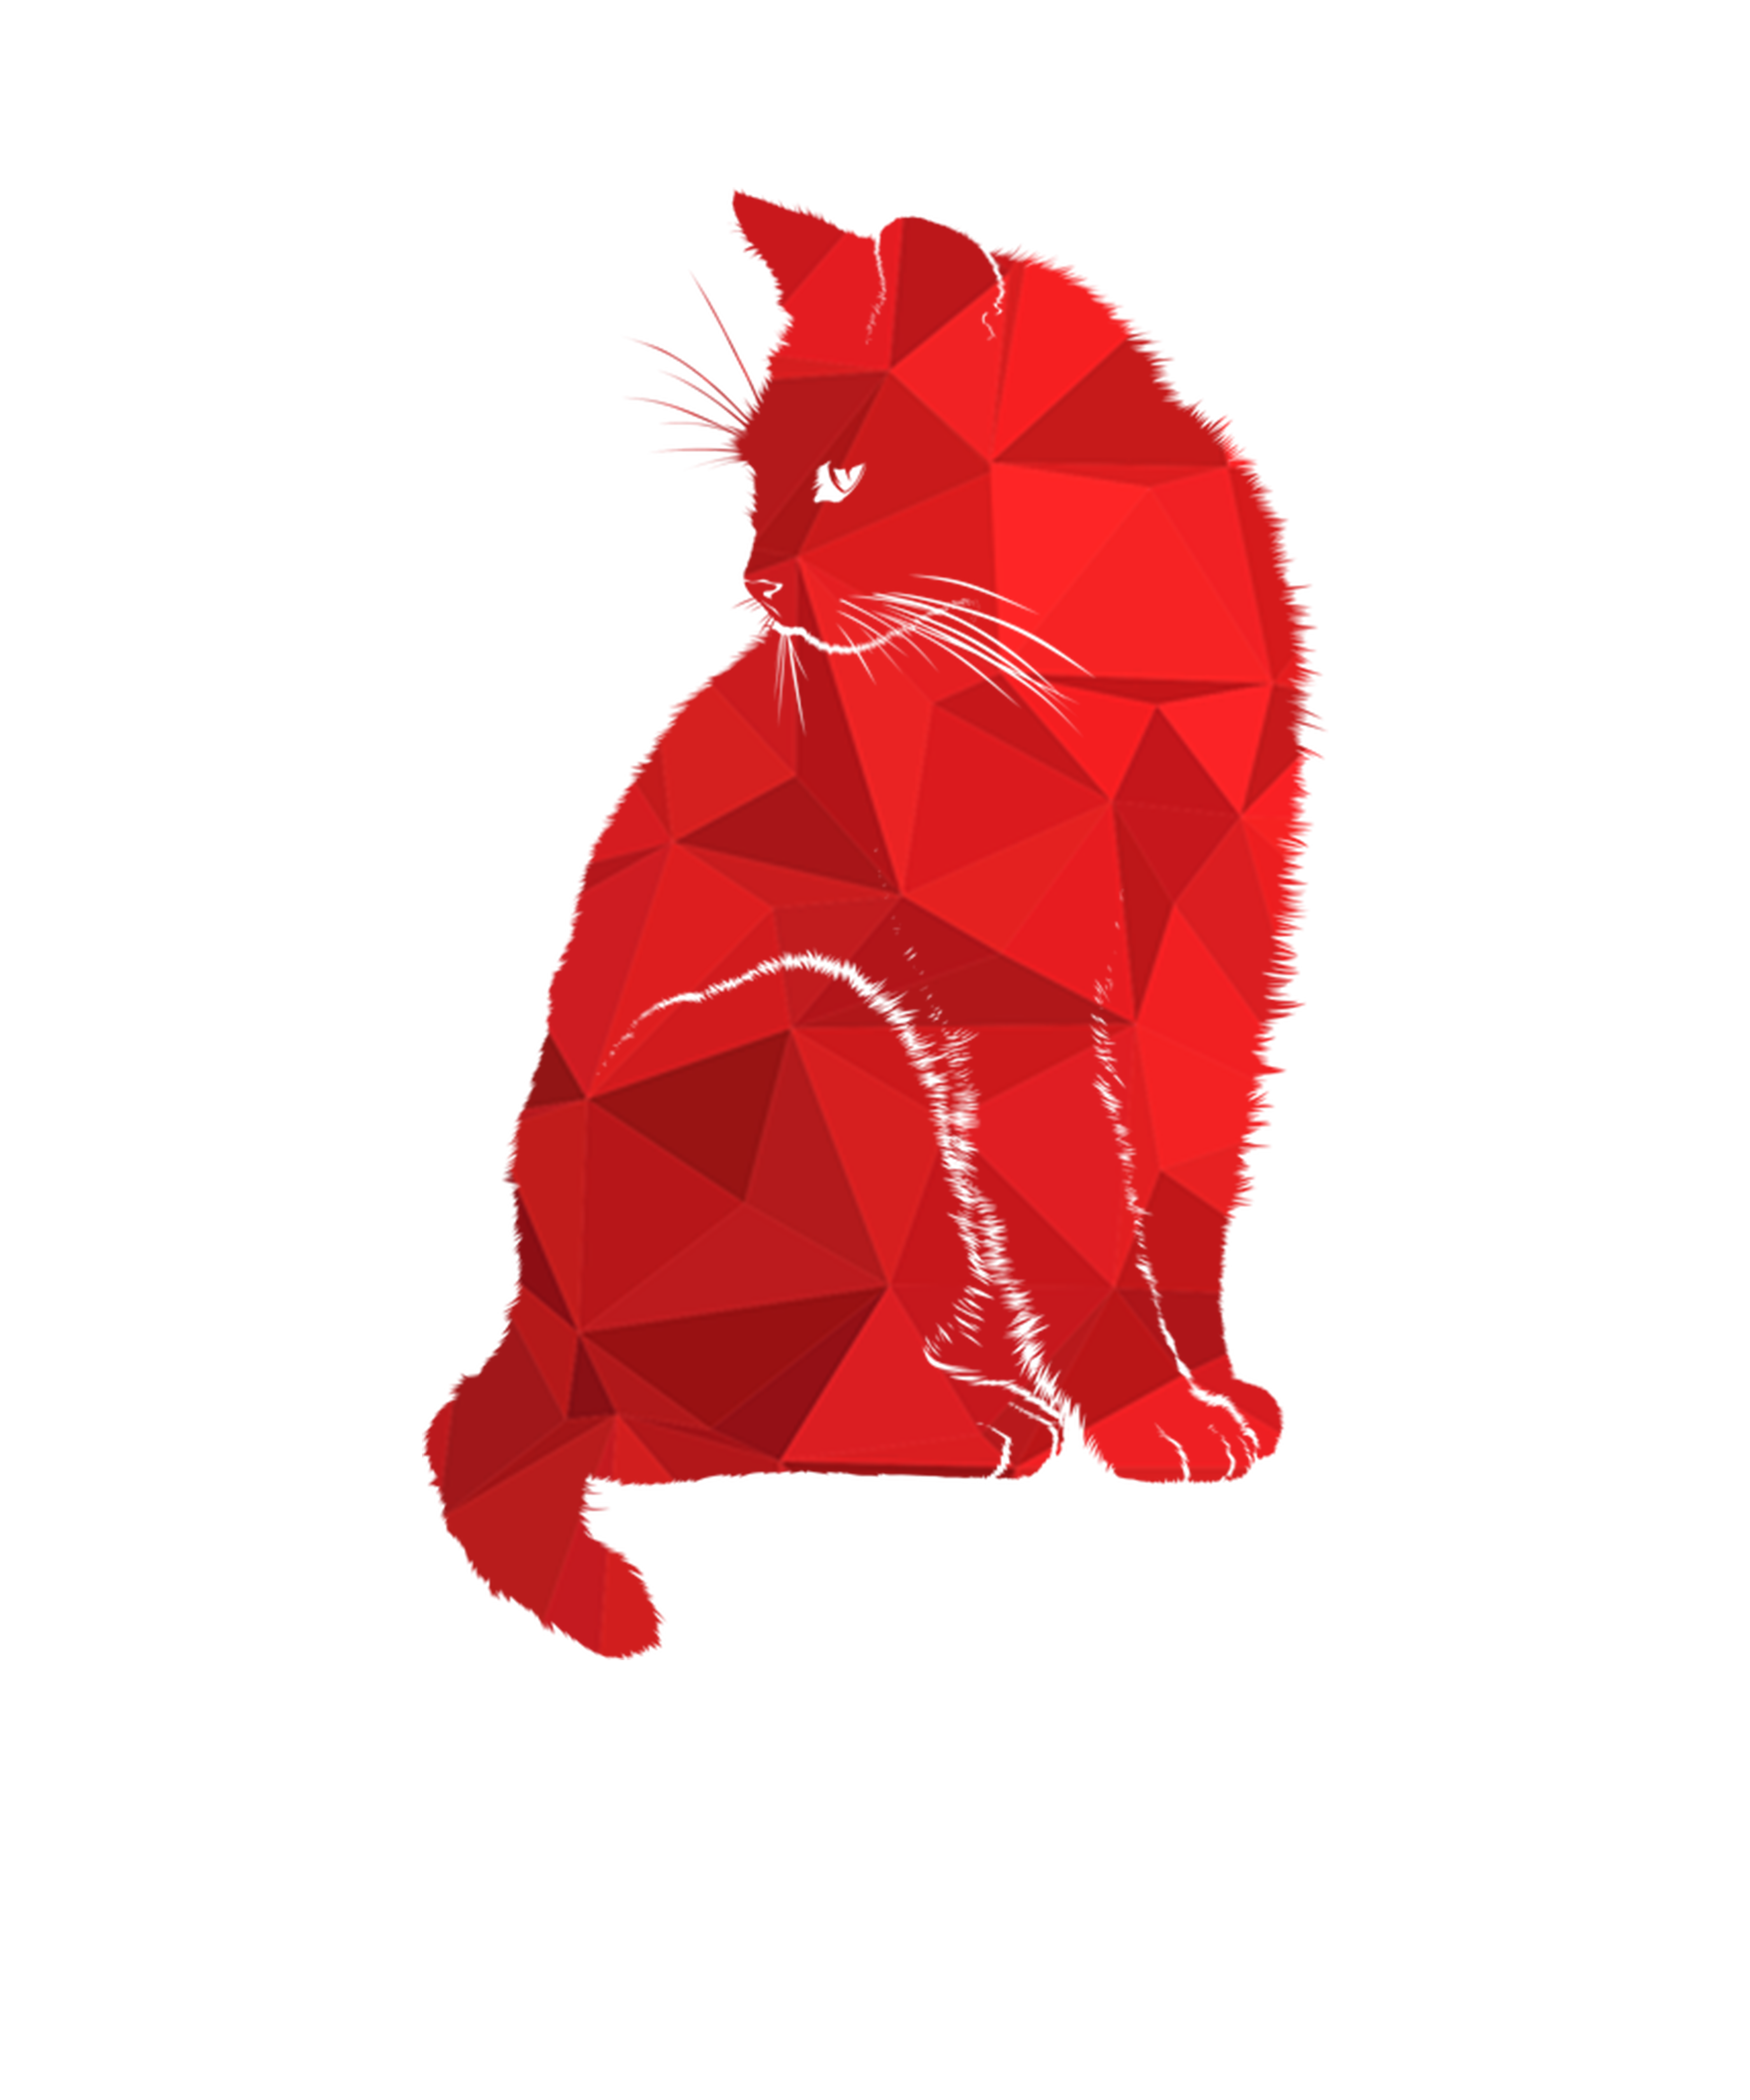 Ред Кэт ред Кэт. Красный кот. Красный котенок. Красный кот на белом фоне. 4 red cat